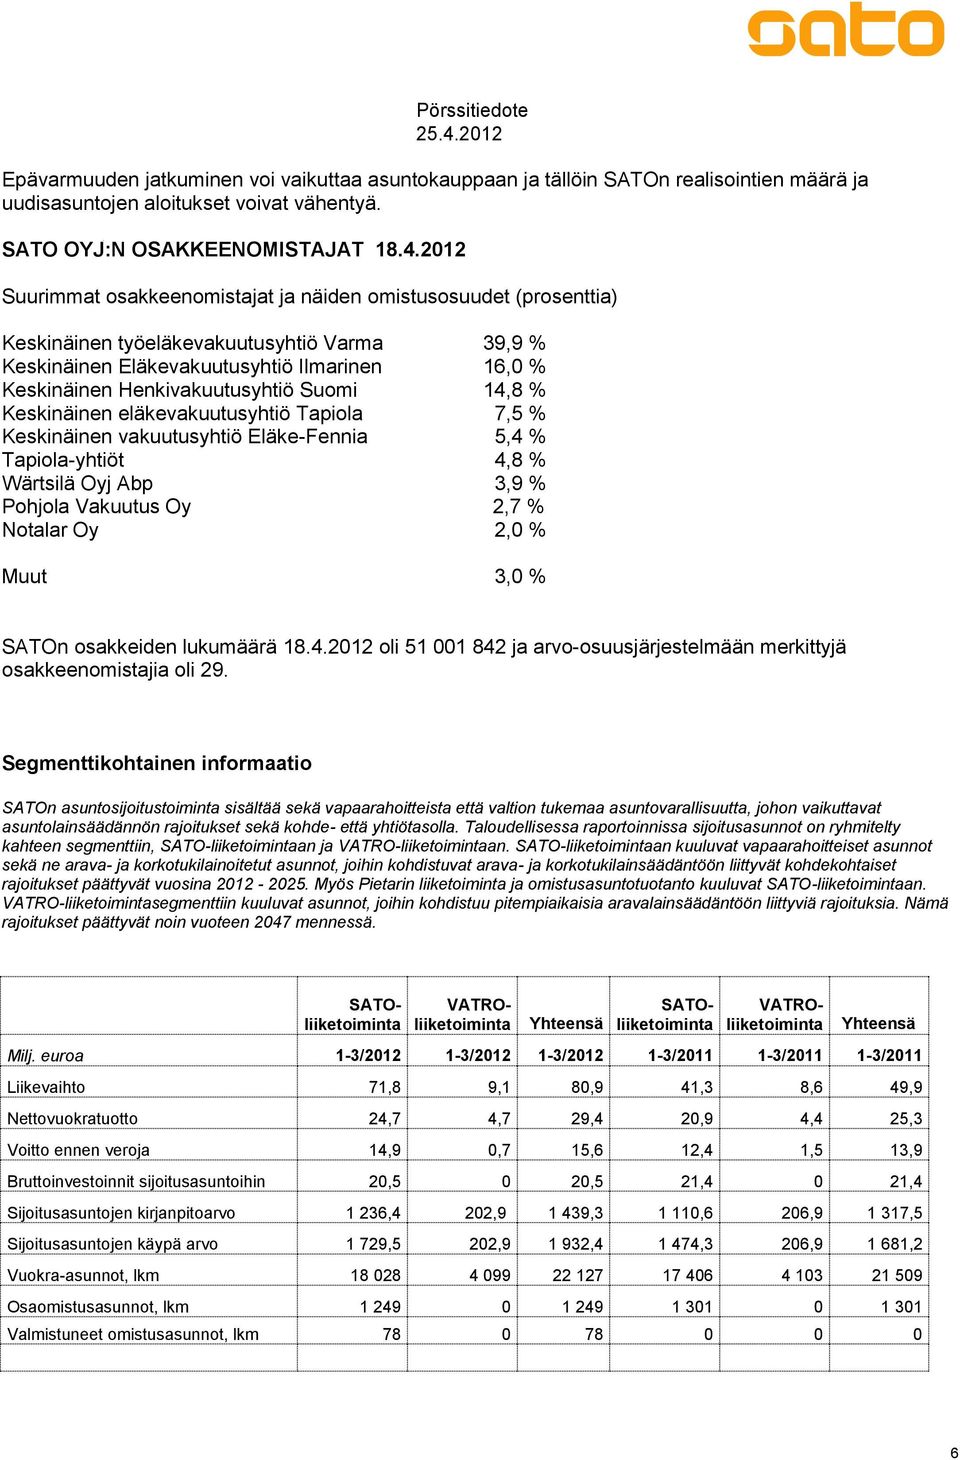 Suomi 14,8 % Keskinäinen eläkevakuutusyhtiö Tapiola 7,5 % Keskinäinen vakuutusyhtiö Eläke-Fennia 5,4 % Tapiola-yhtiöt 4,8 % Wärtsilä Oyj Abp 3,9 % Pohjola Vakuutus Oy 2,7 % Notalar Oy 2,0 % Muut 3,0